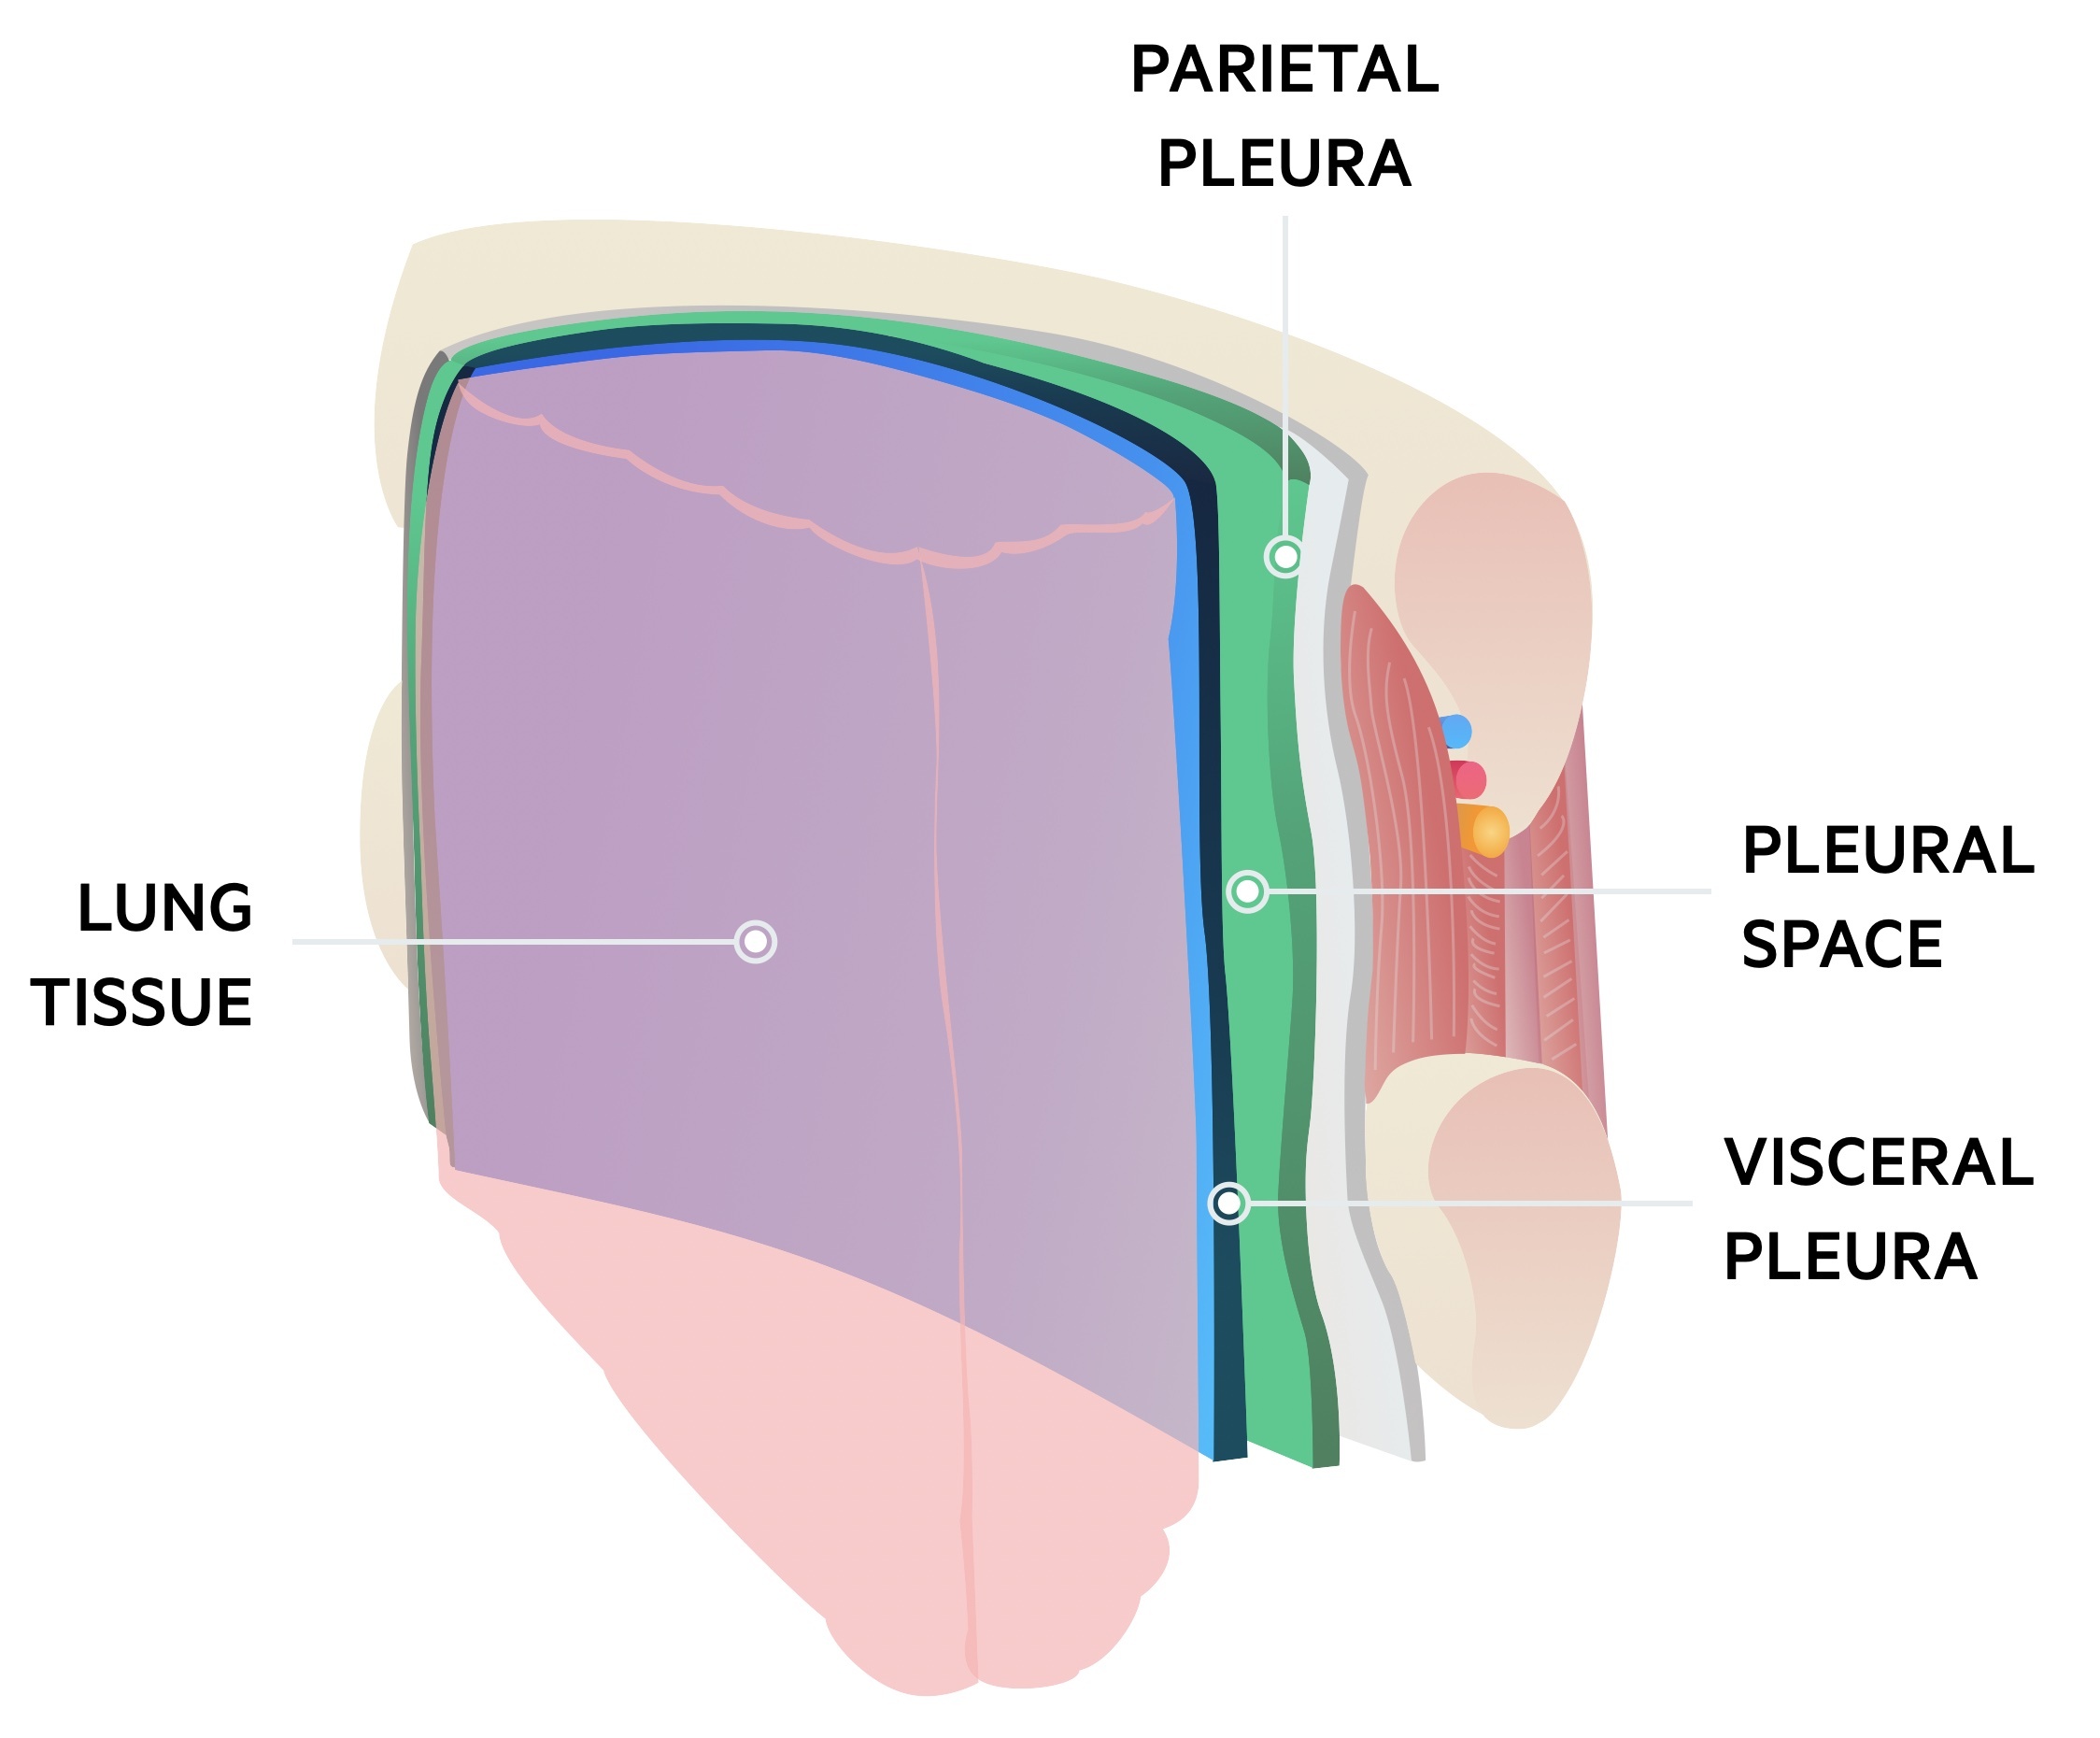 Pleural anatomy